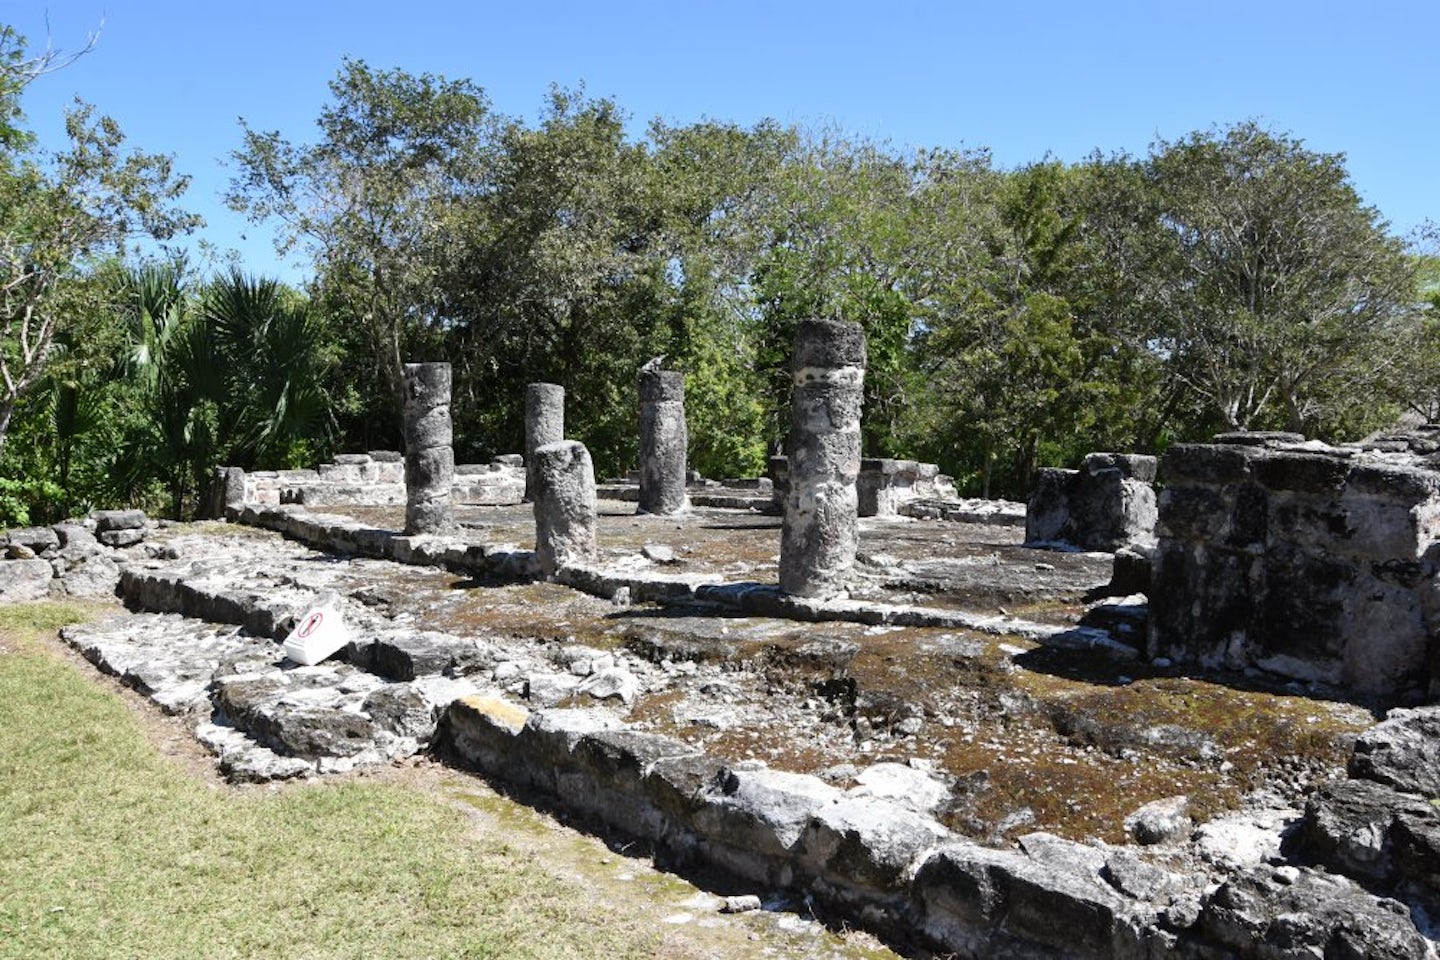 More of the Mayan ruins at San Gervasio.